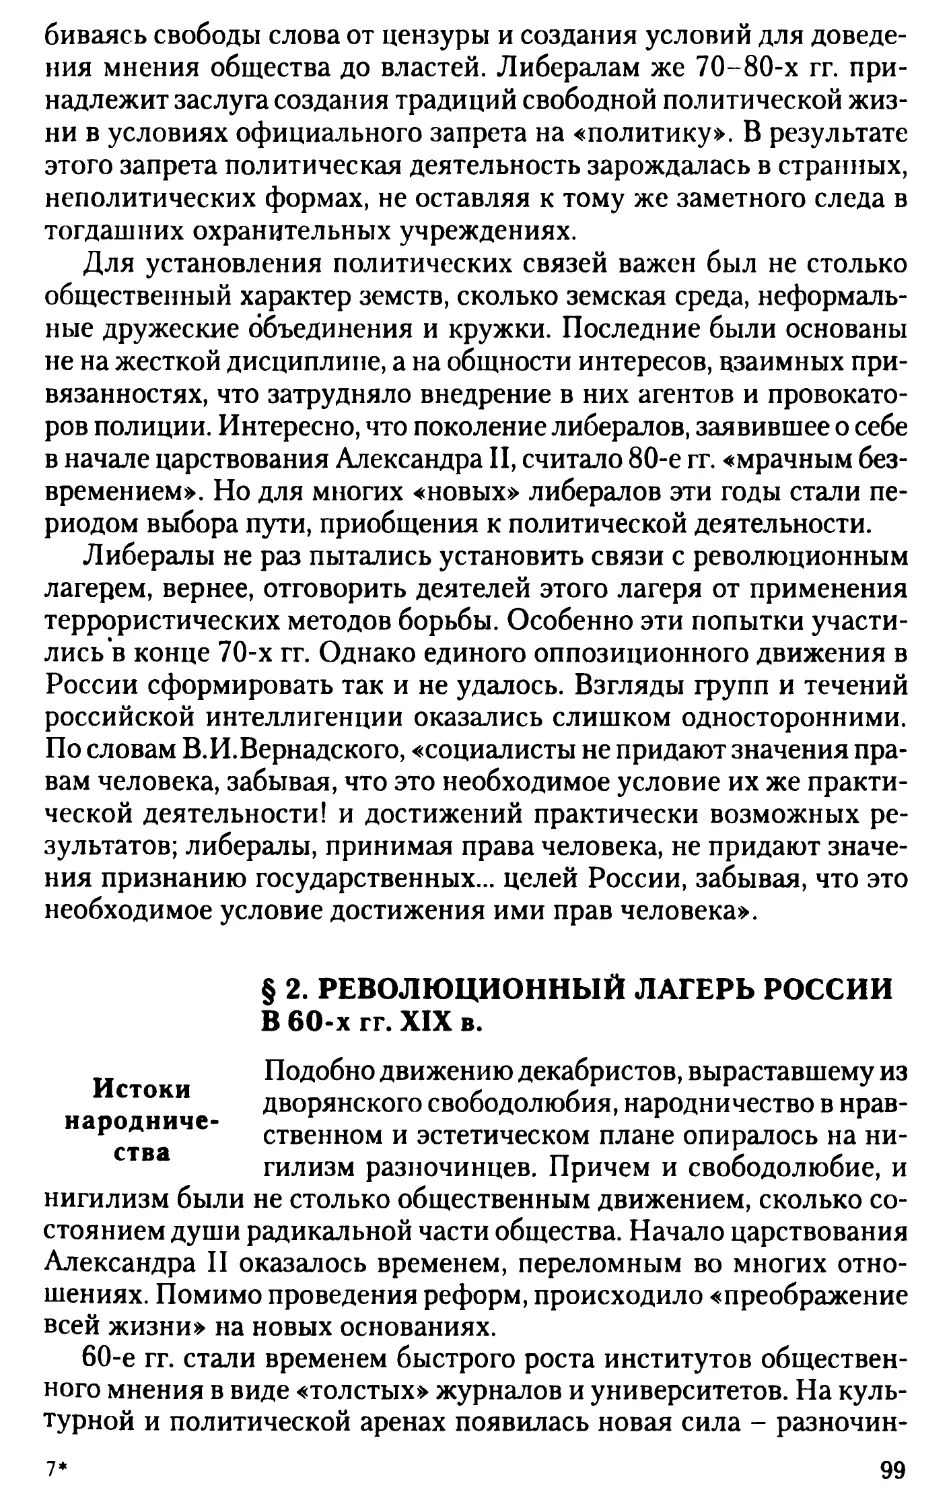 § 2. Революционный лагерь России в 60-х гг. XIX в